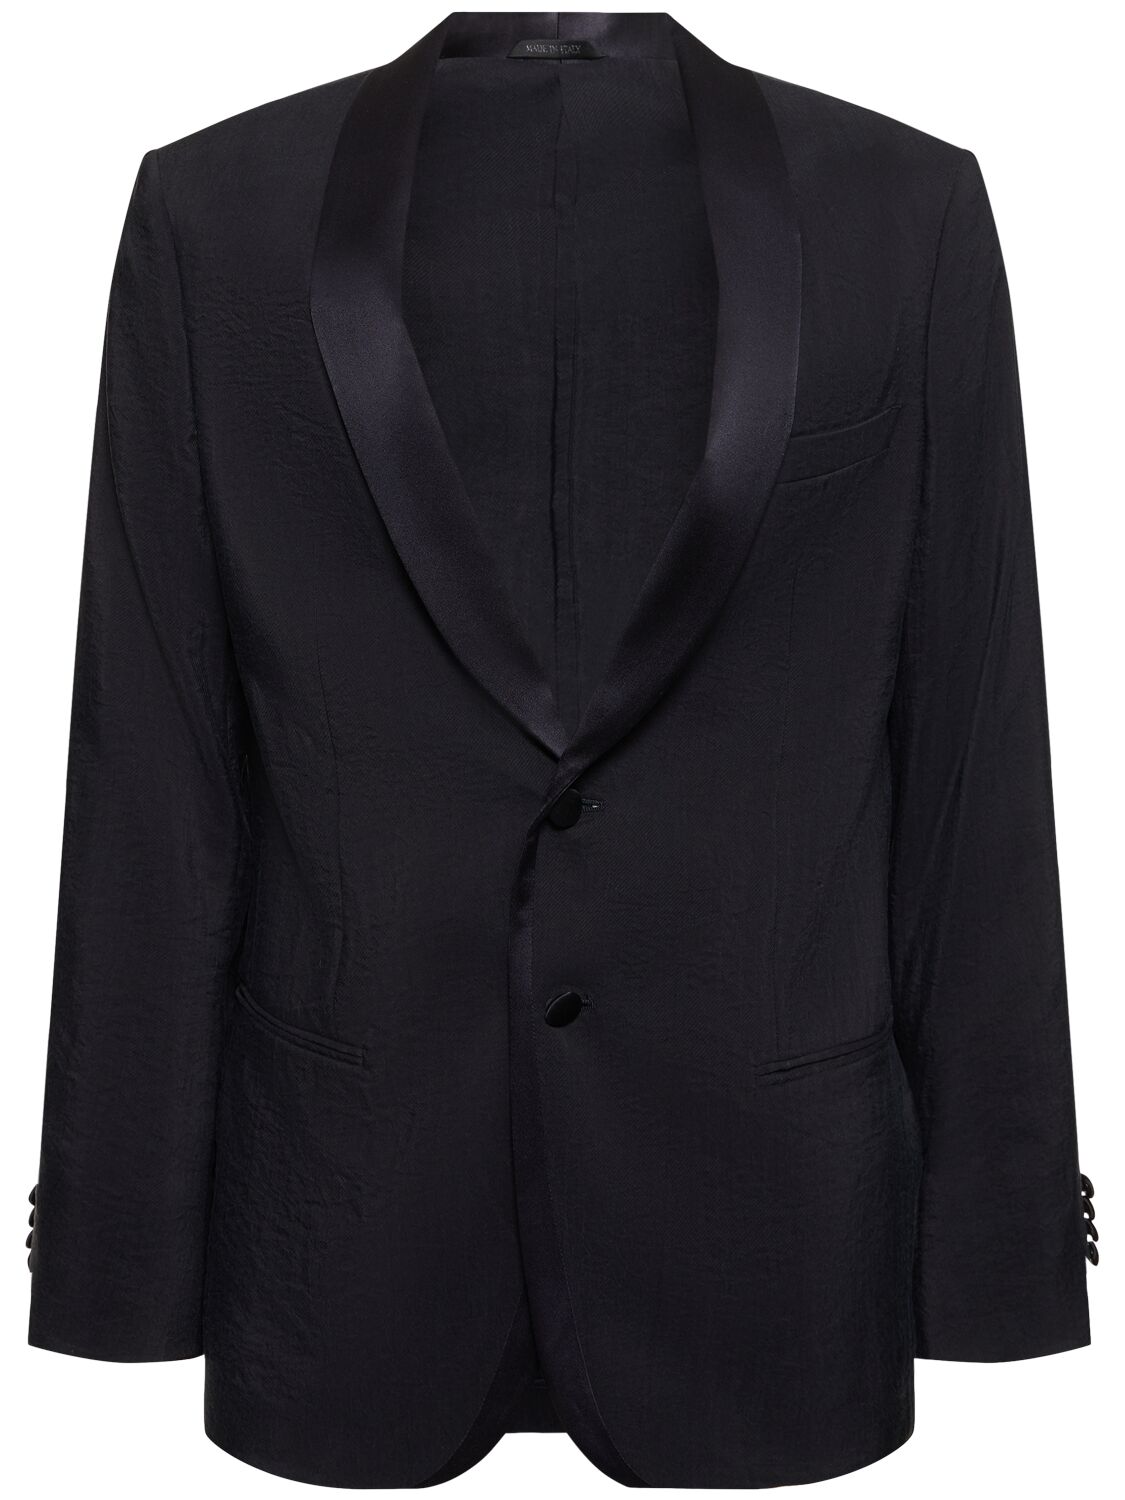 Image of Silk Blend Tuxedo Jacket